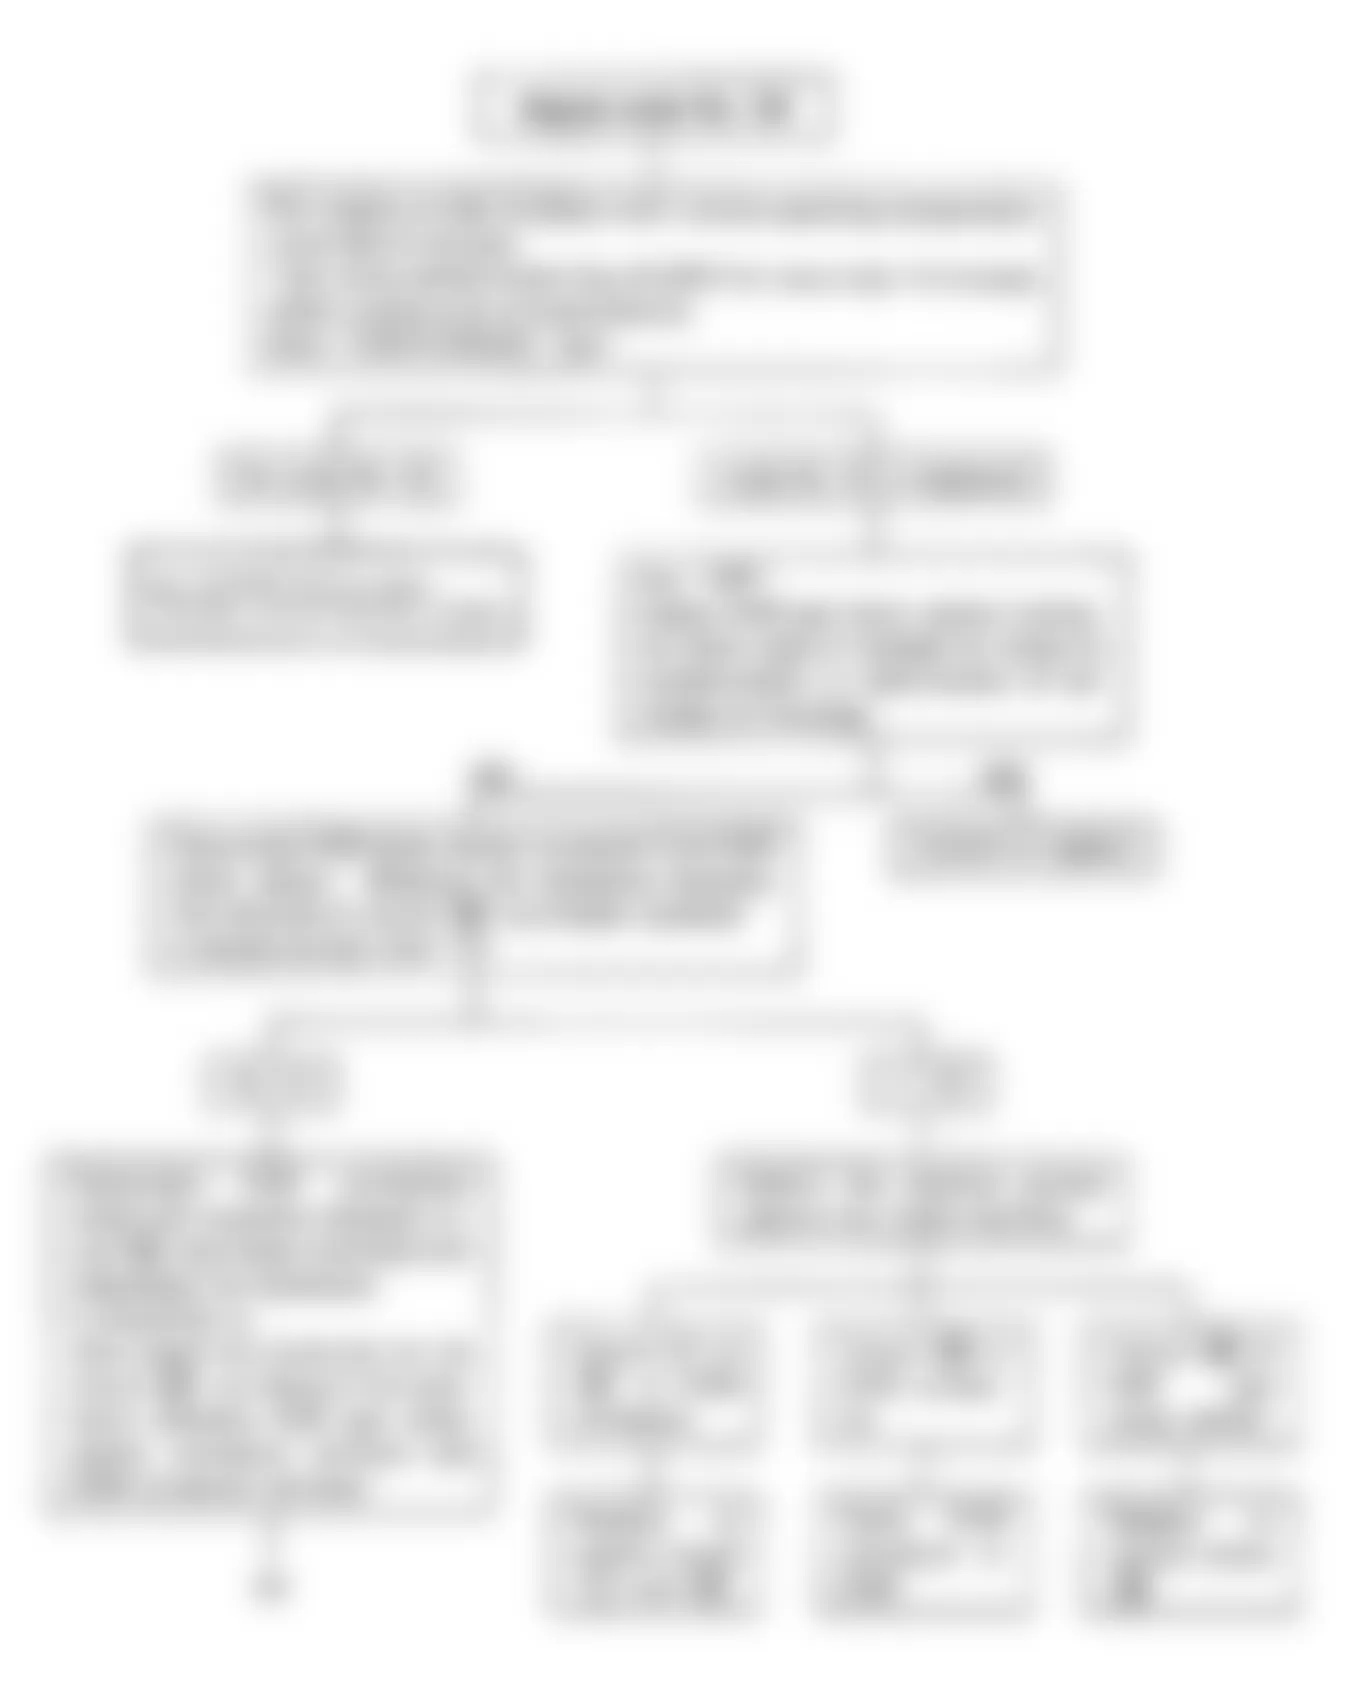 Isuzu Amigo S 1990 - Component Locations -  Code 34: Flow Chart EGR Temp Sensor (1 of 2)